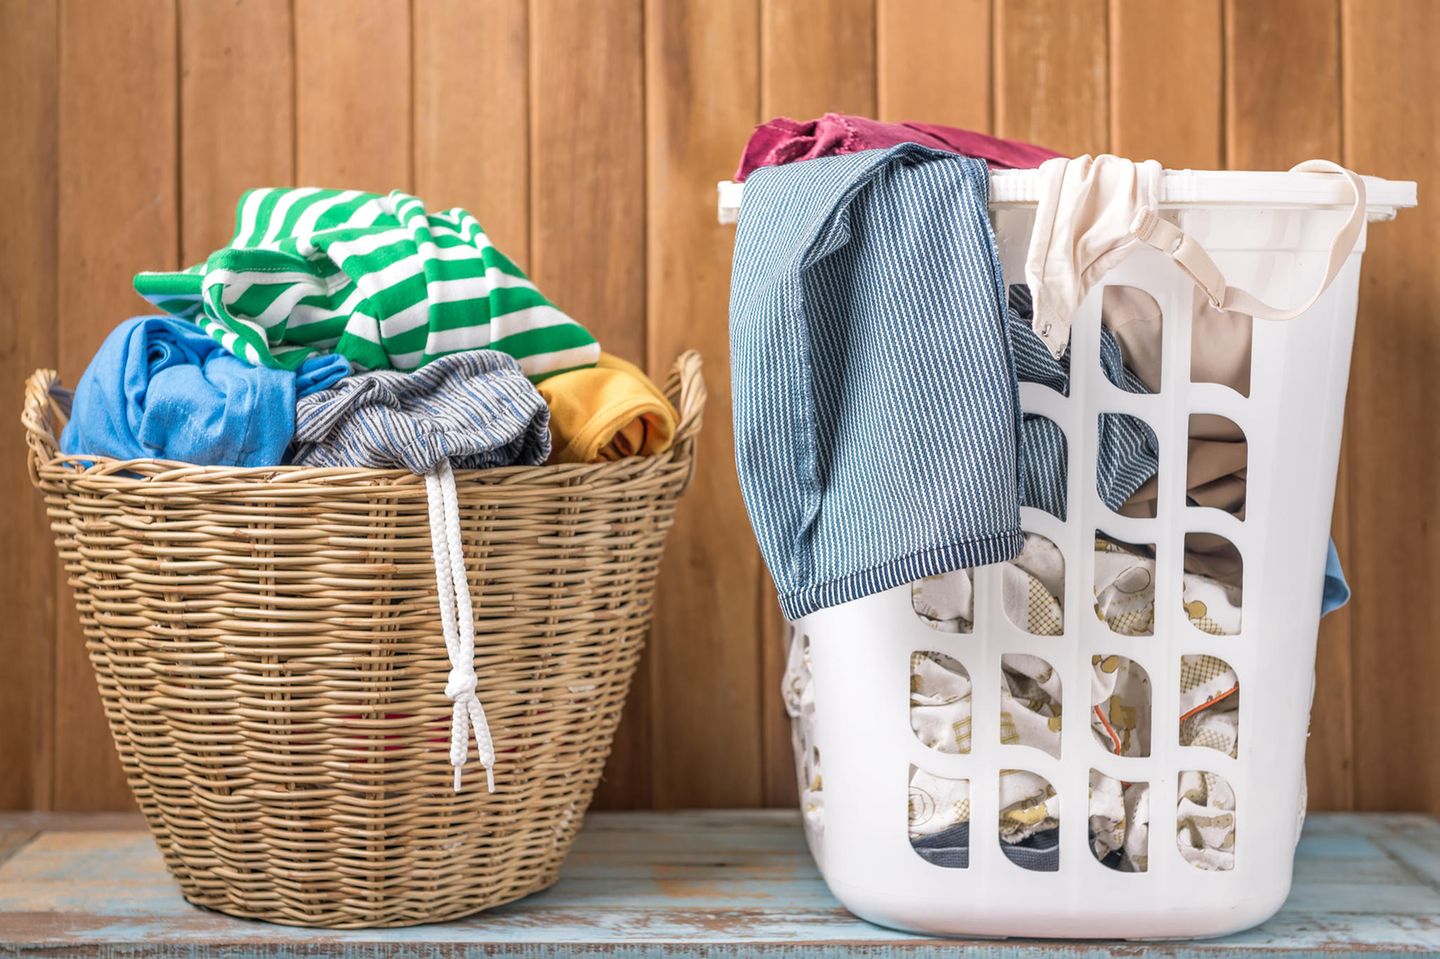 Wäsche sortieren: Wäschekorb mit dreckiger Wäsche